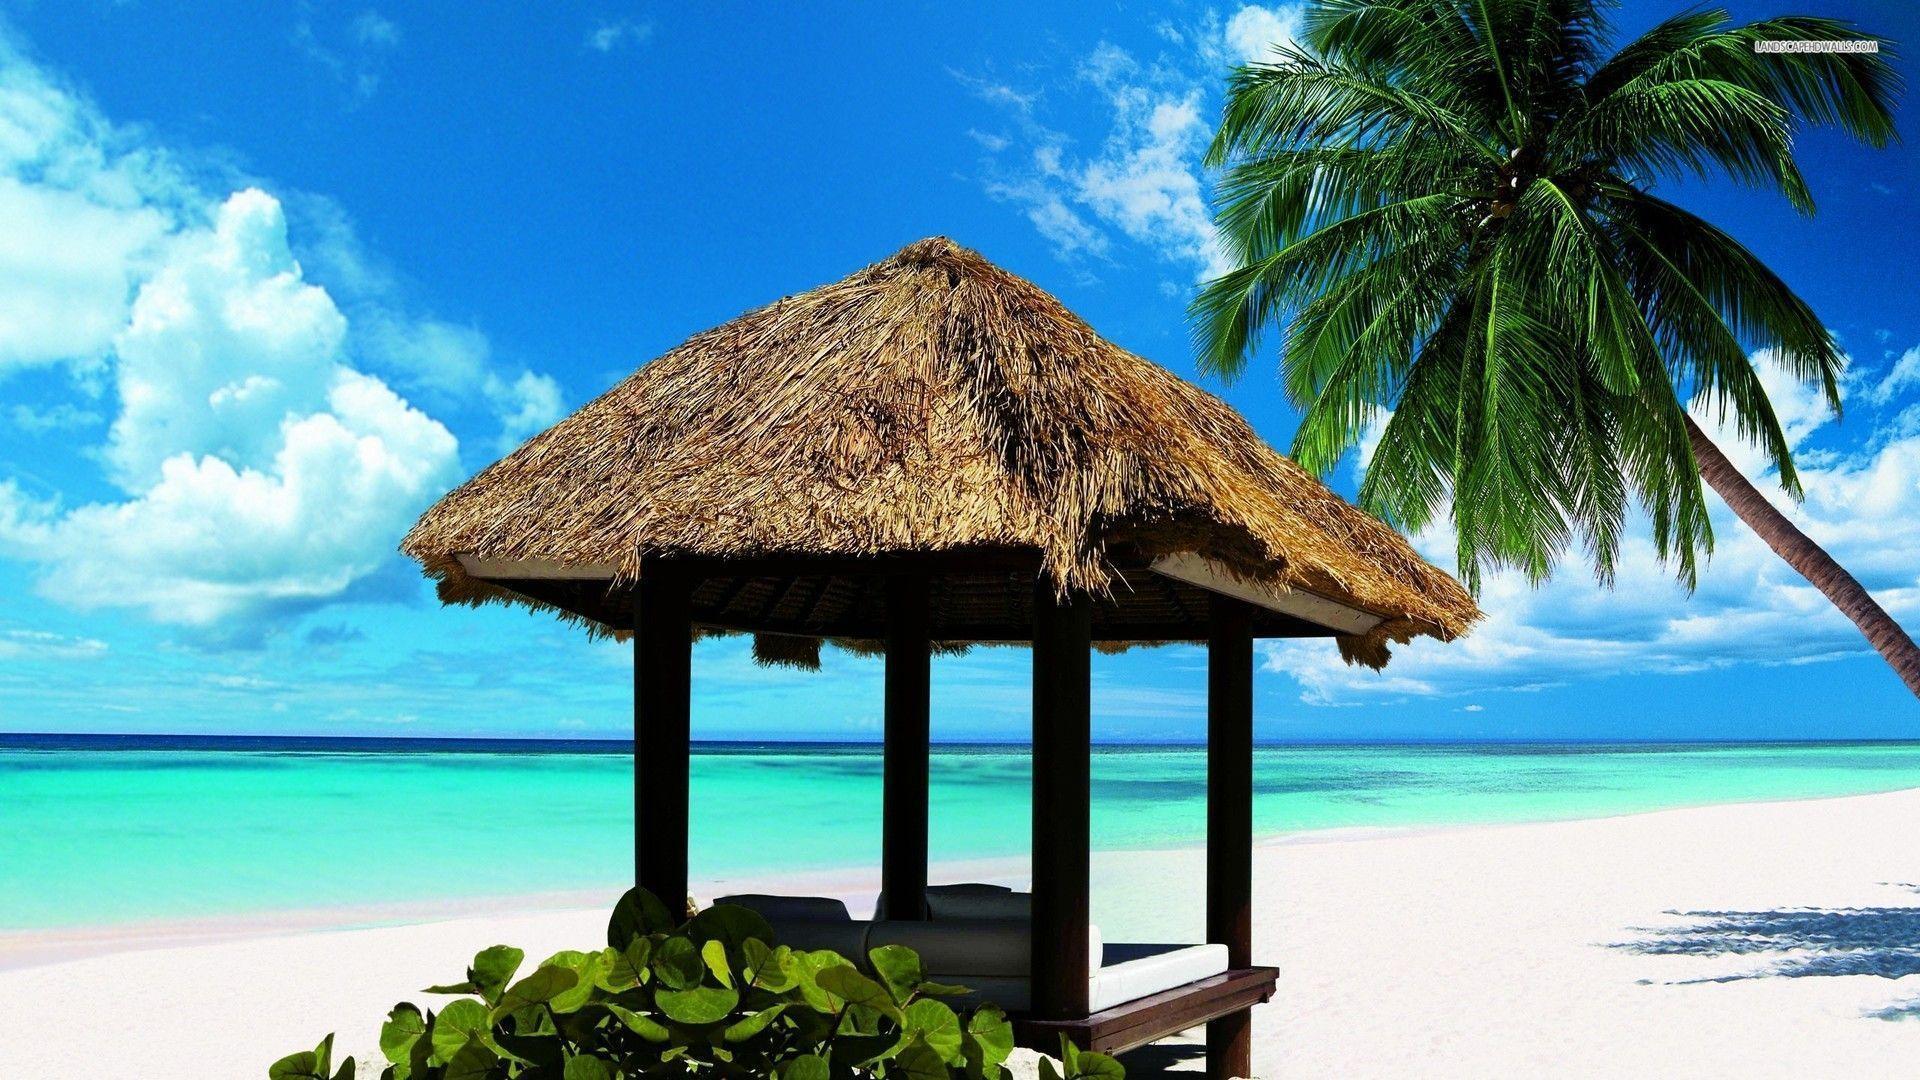 Beach Hut Wallpapers - Top Free Beach Hut Backgrounds - WallpaperAccess